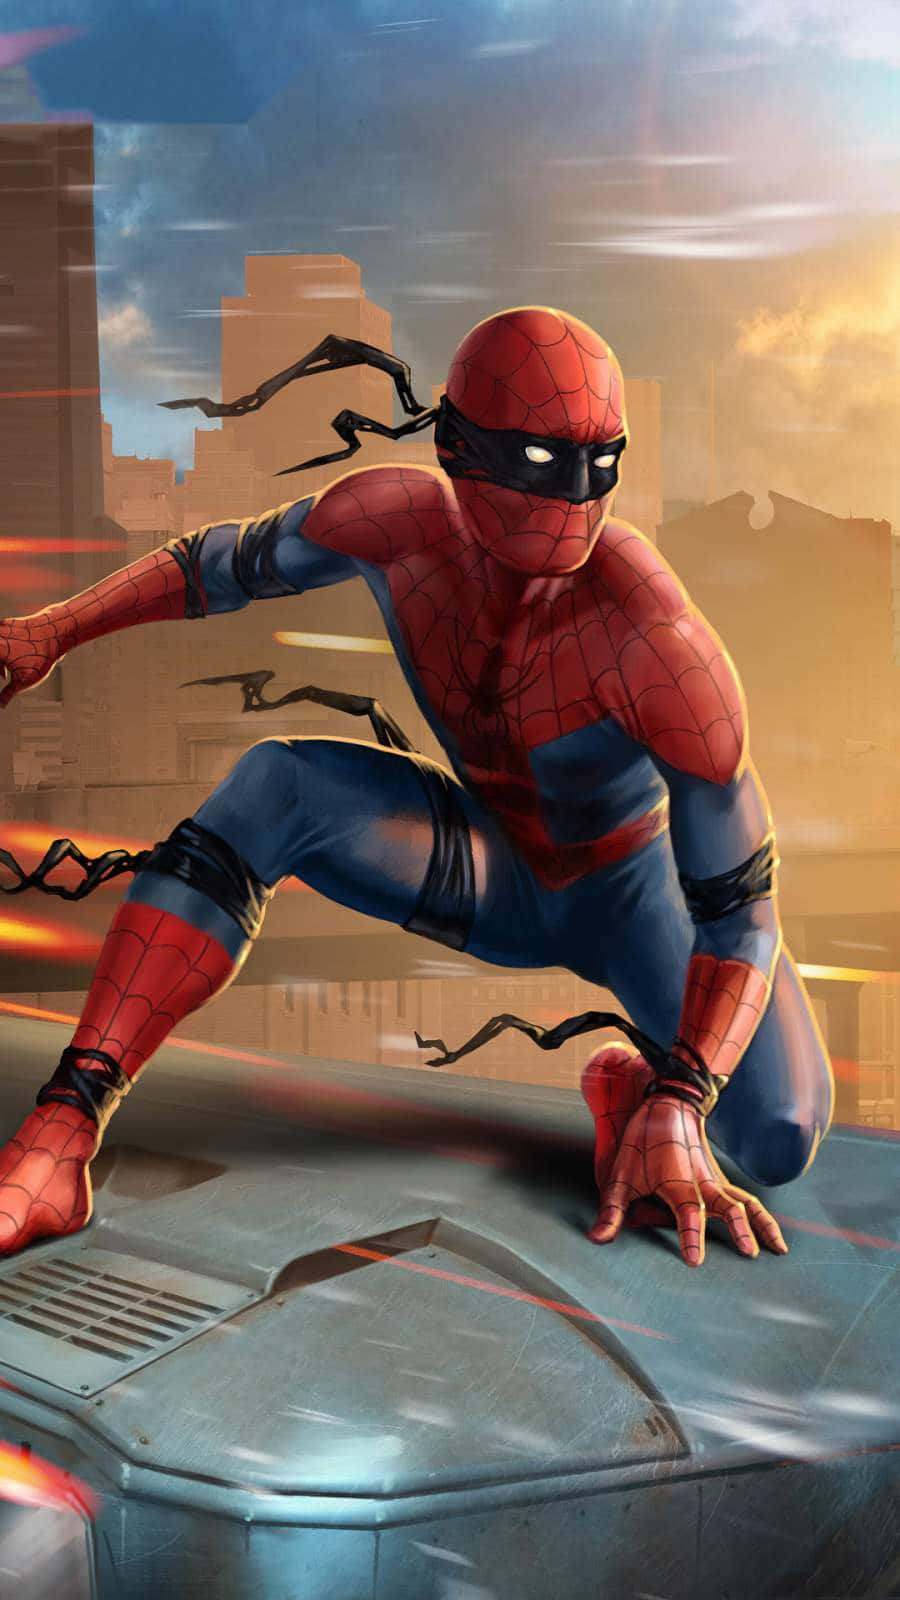 Spiderman - Den Fantastiska Spider-man 2. Wallpaper